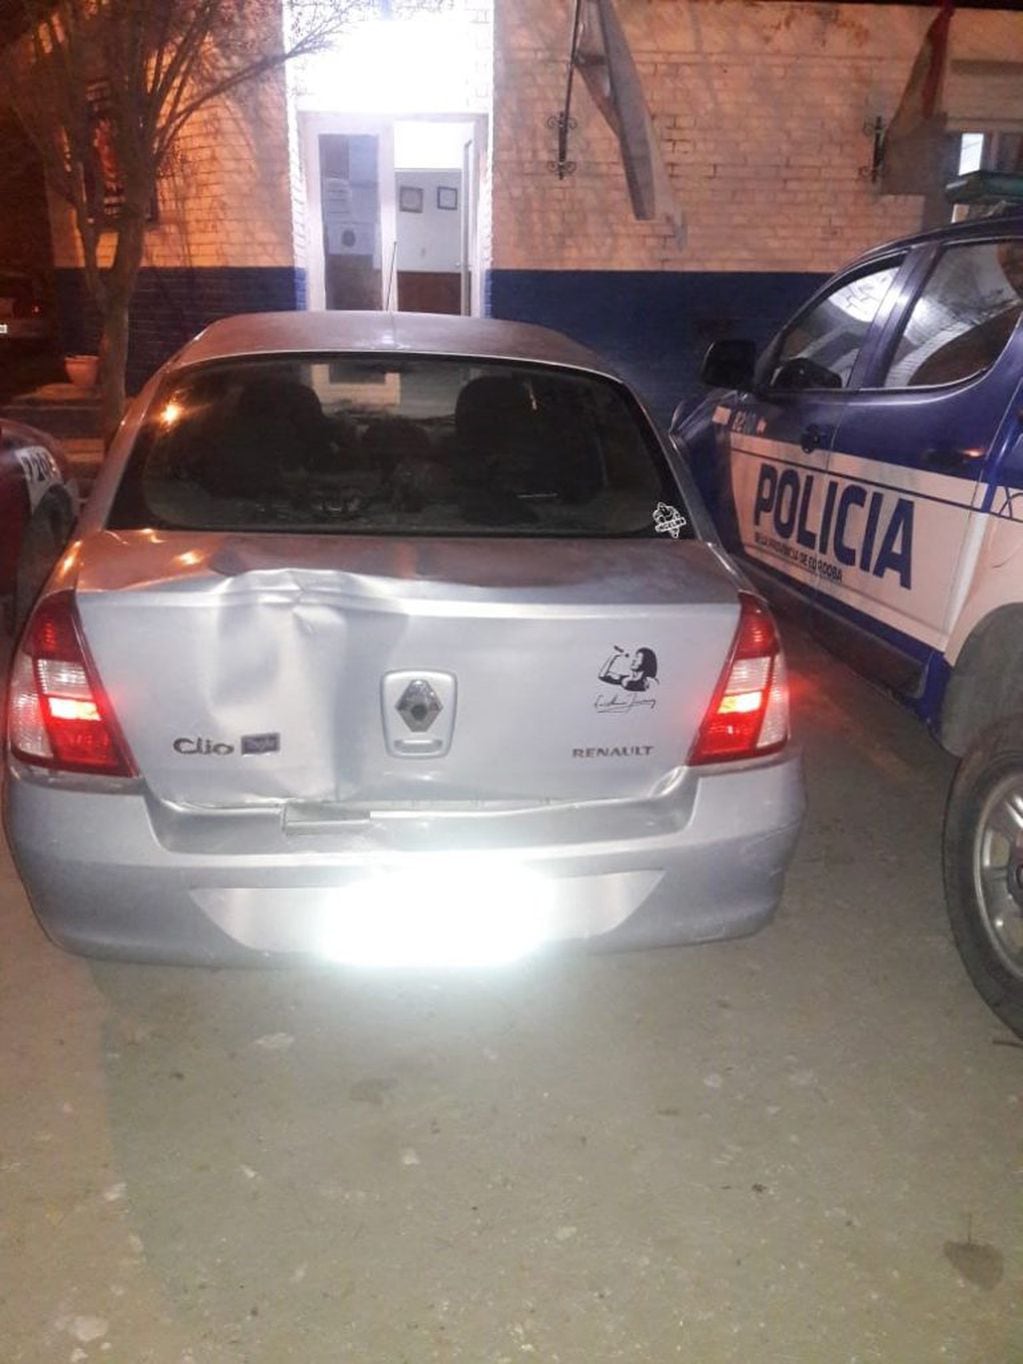 Renault Clio que fue utilizado para robar una vivienda hace poco más de un mes.